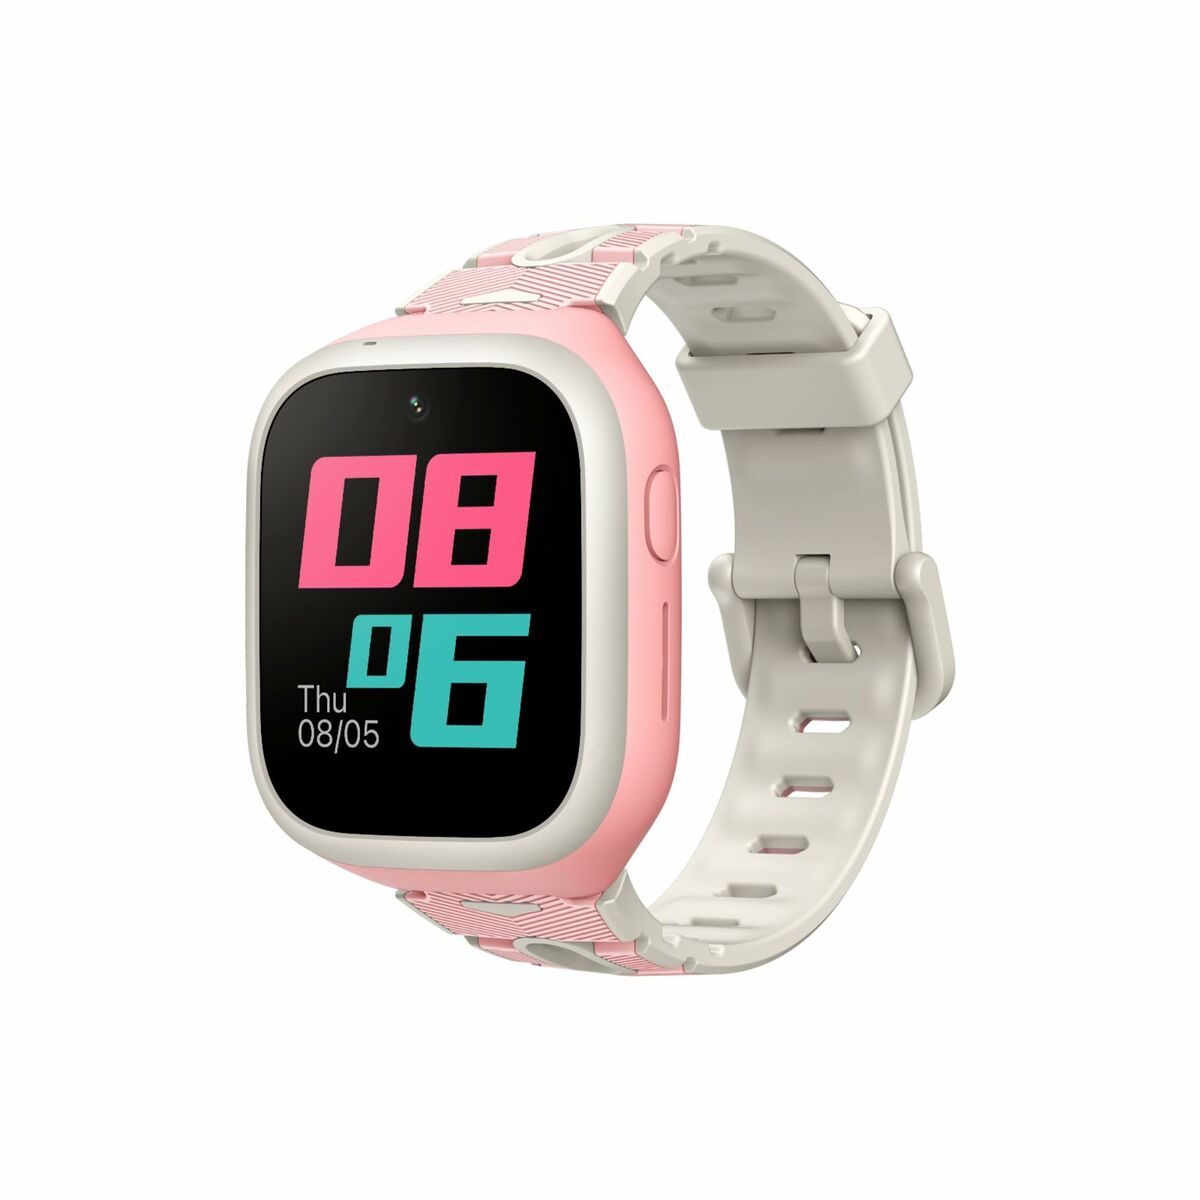 Kaufe Smartwatch Mibro P5 Rosa bei AWK Flagship um € 101.00